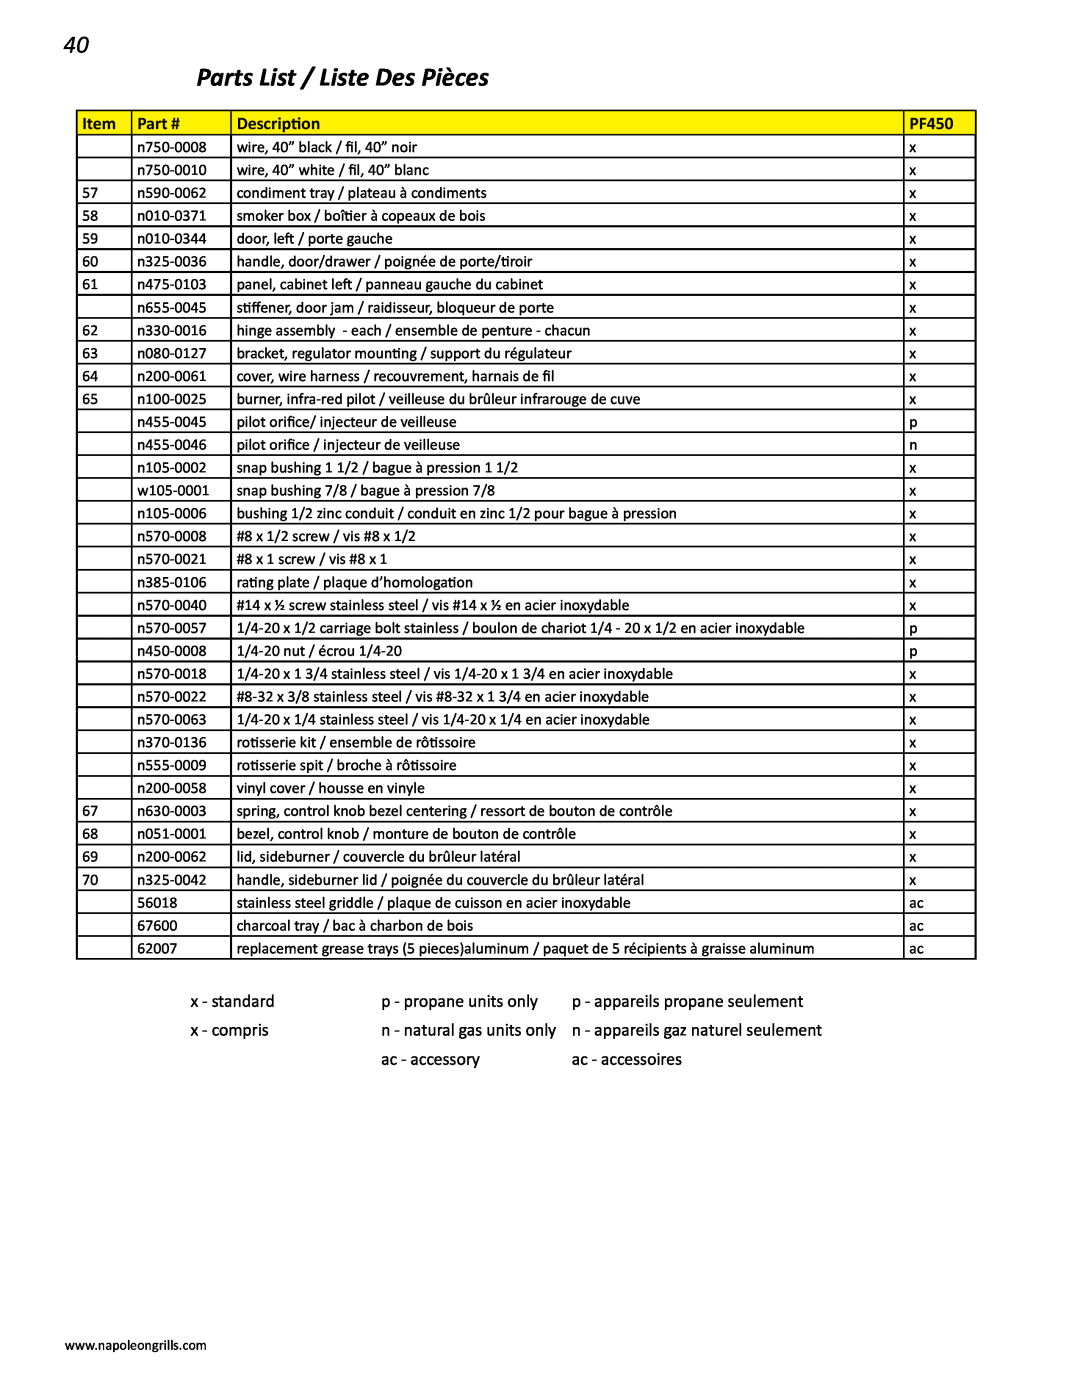 Napoleon Grills V 600 Parts List / Liste Des Pièces, x - standard, p - propane units only, x - compris, ac - accessory 